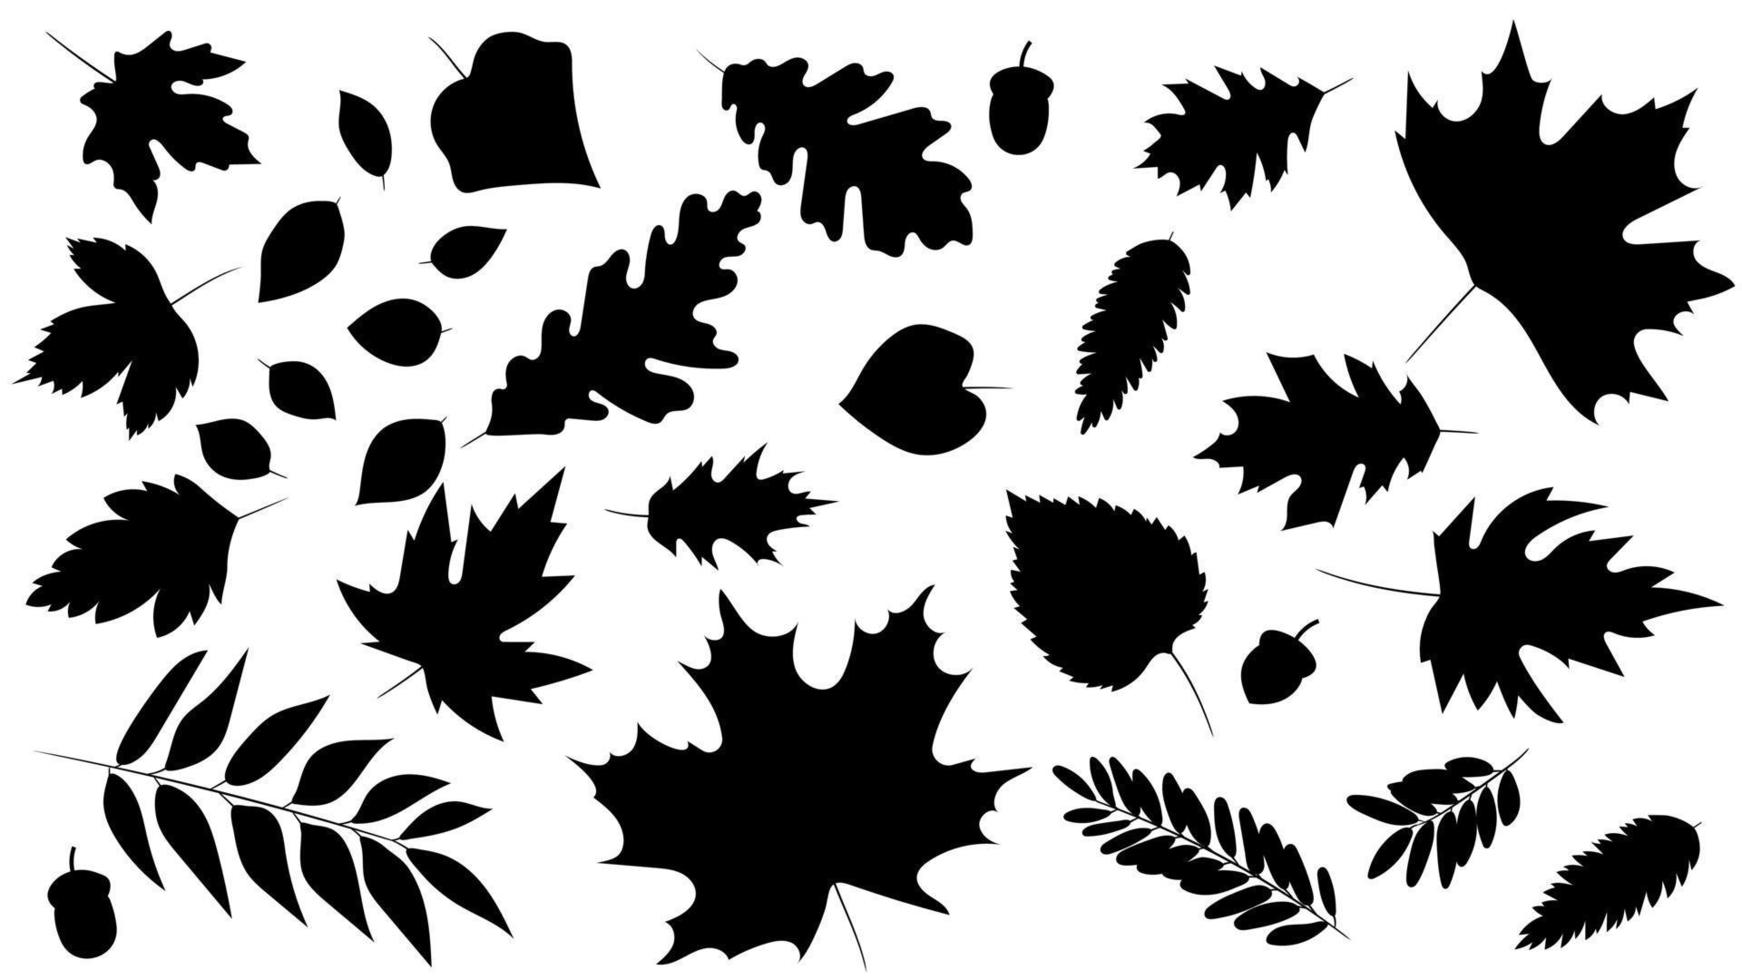 gran conjunto de hojas de diferentes tipos de árboles aislados. conjunto de roble de hoja de otoño negro, arce, serbal y bellotas. estilo de silueta realista. ilustración vectorial conjunto de follaje. vector